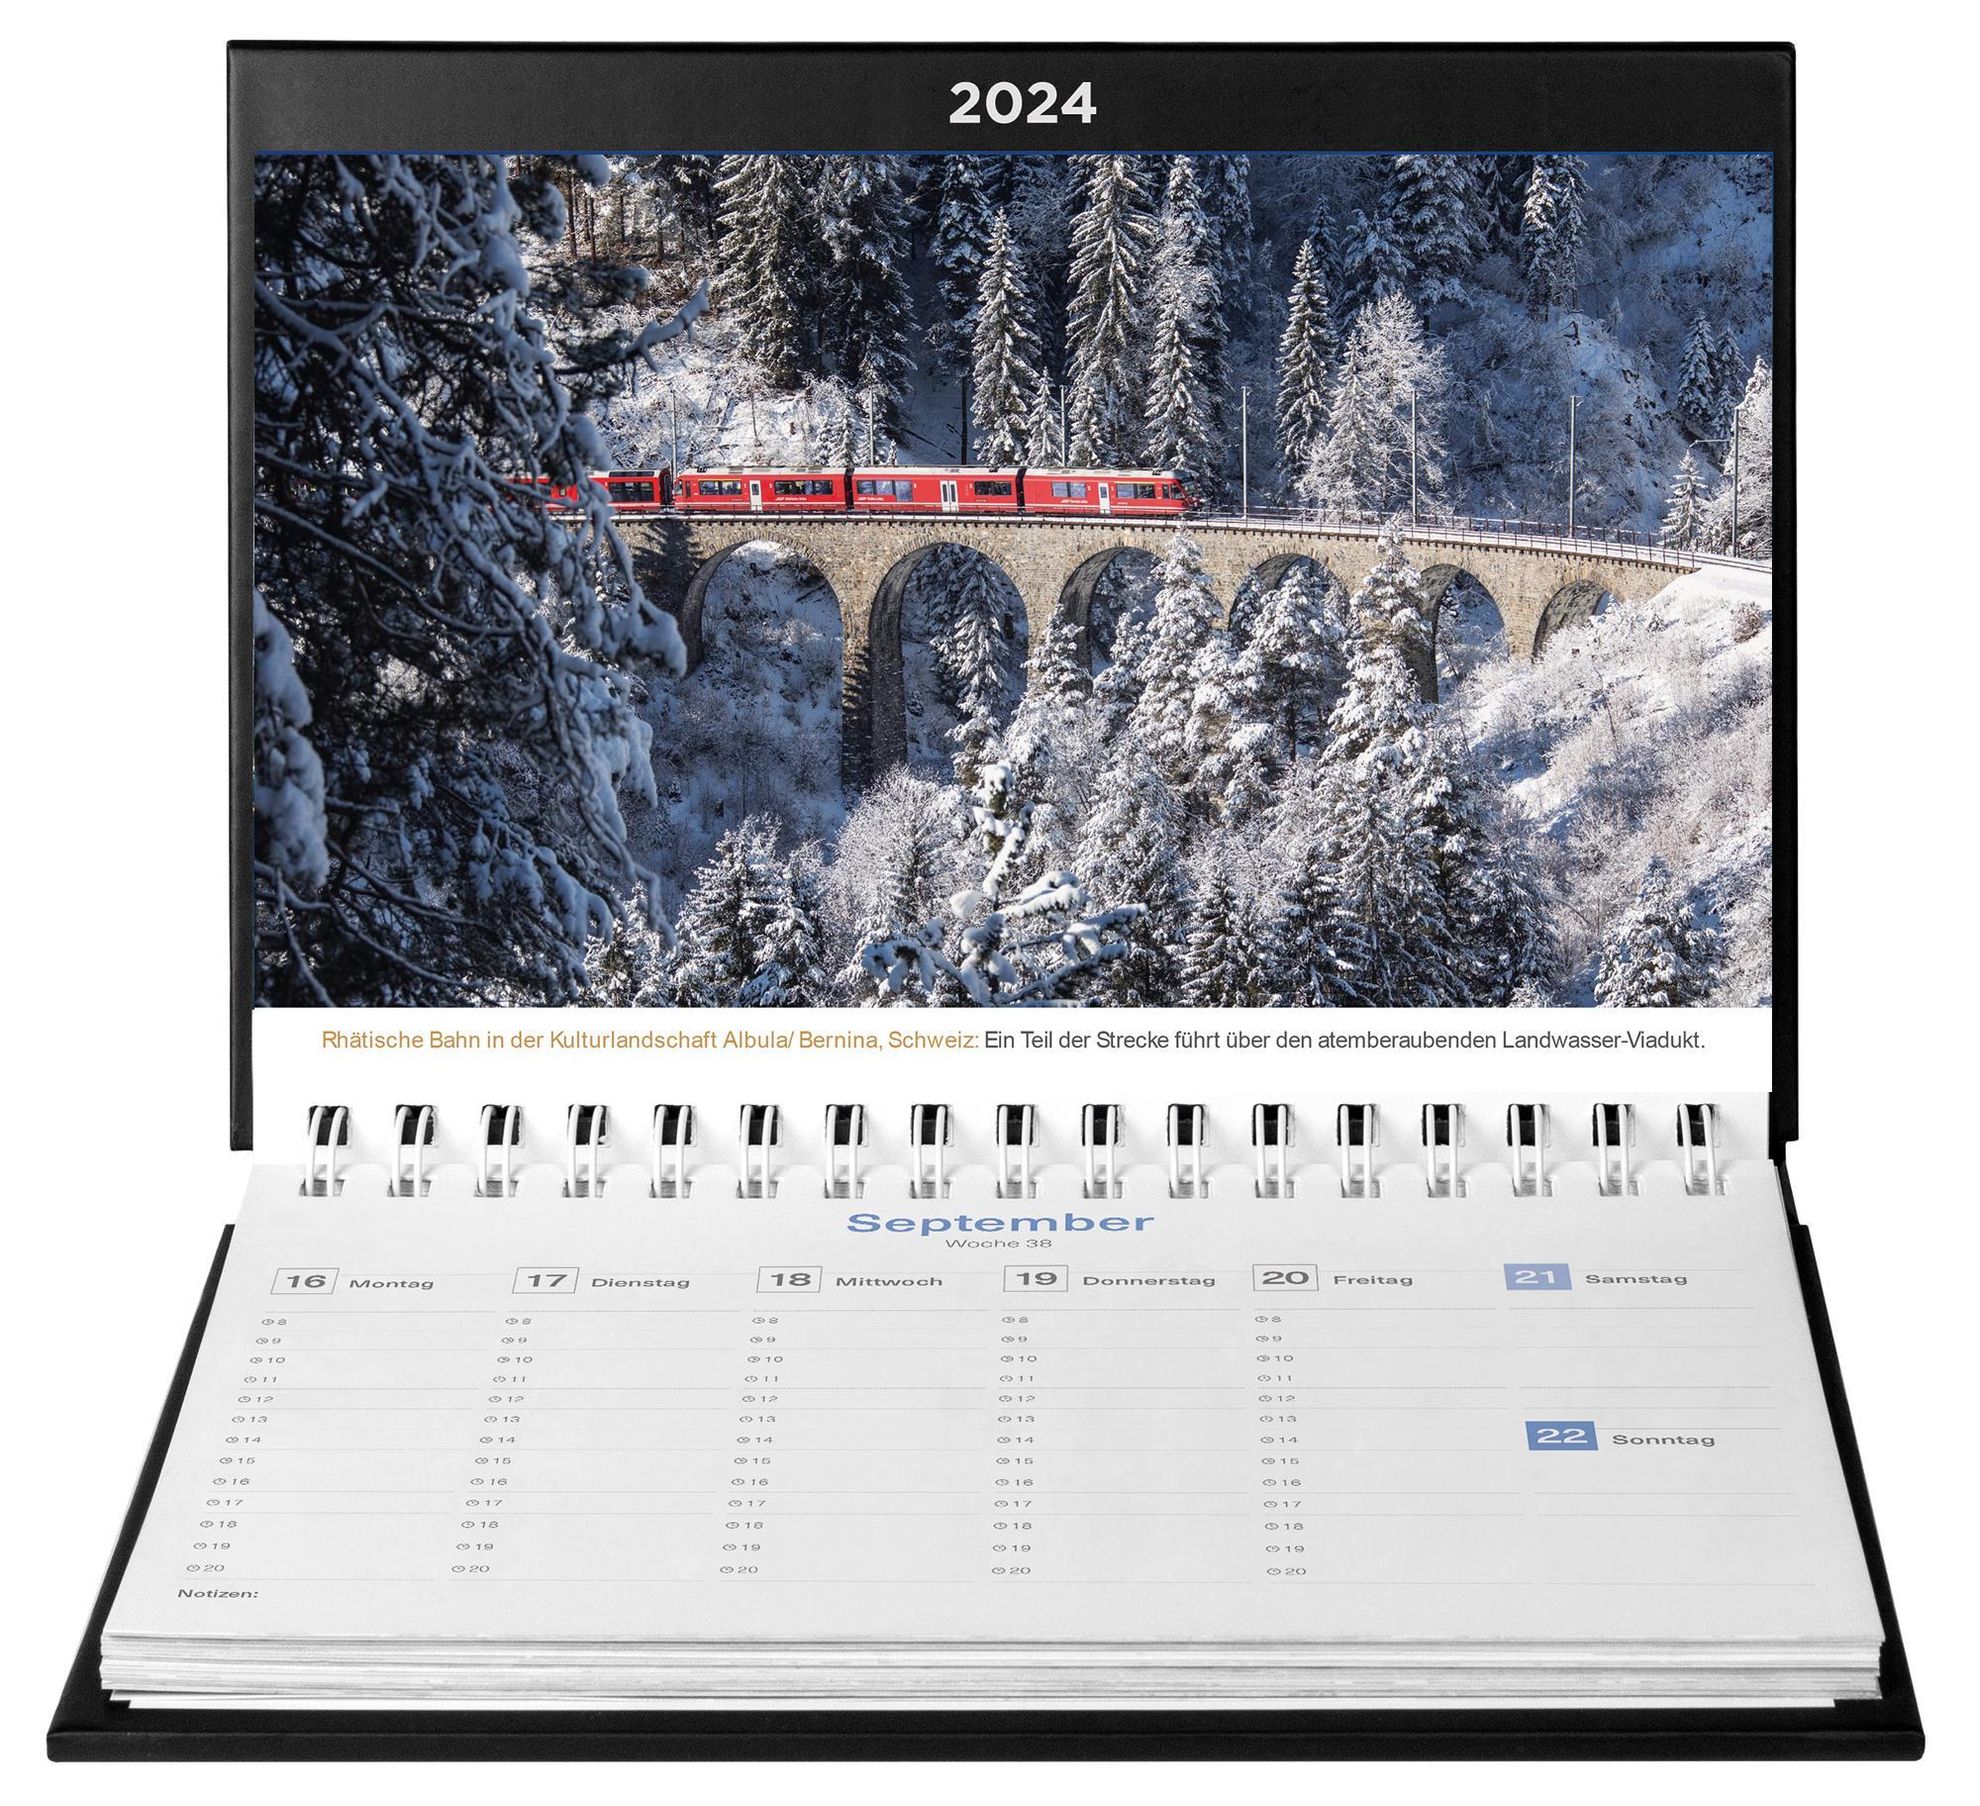 Das Erbe der Welt - KUNTH Tischkalender 2024 - Kalender bestellen